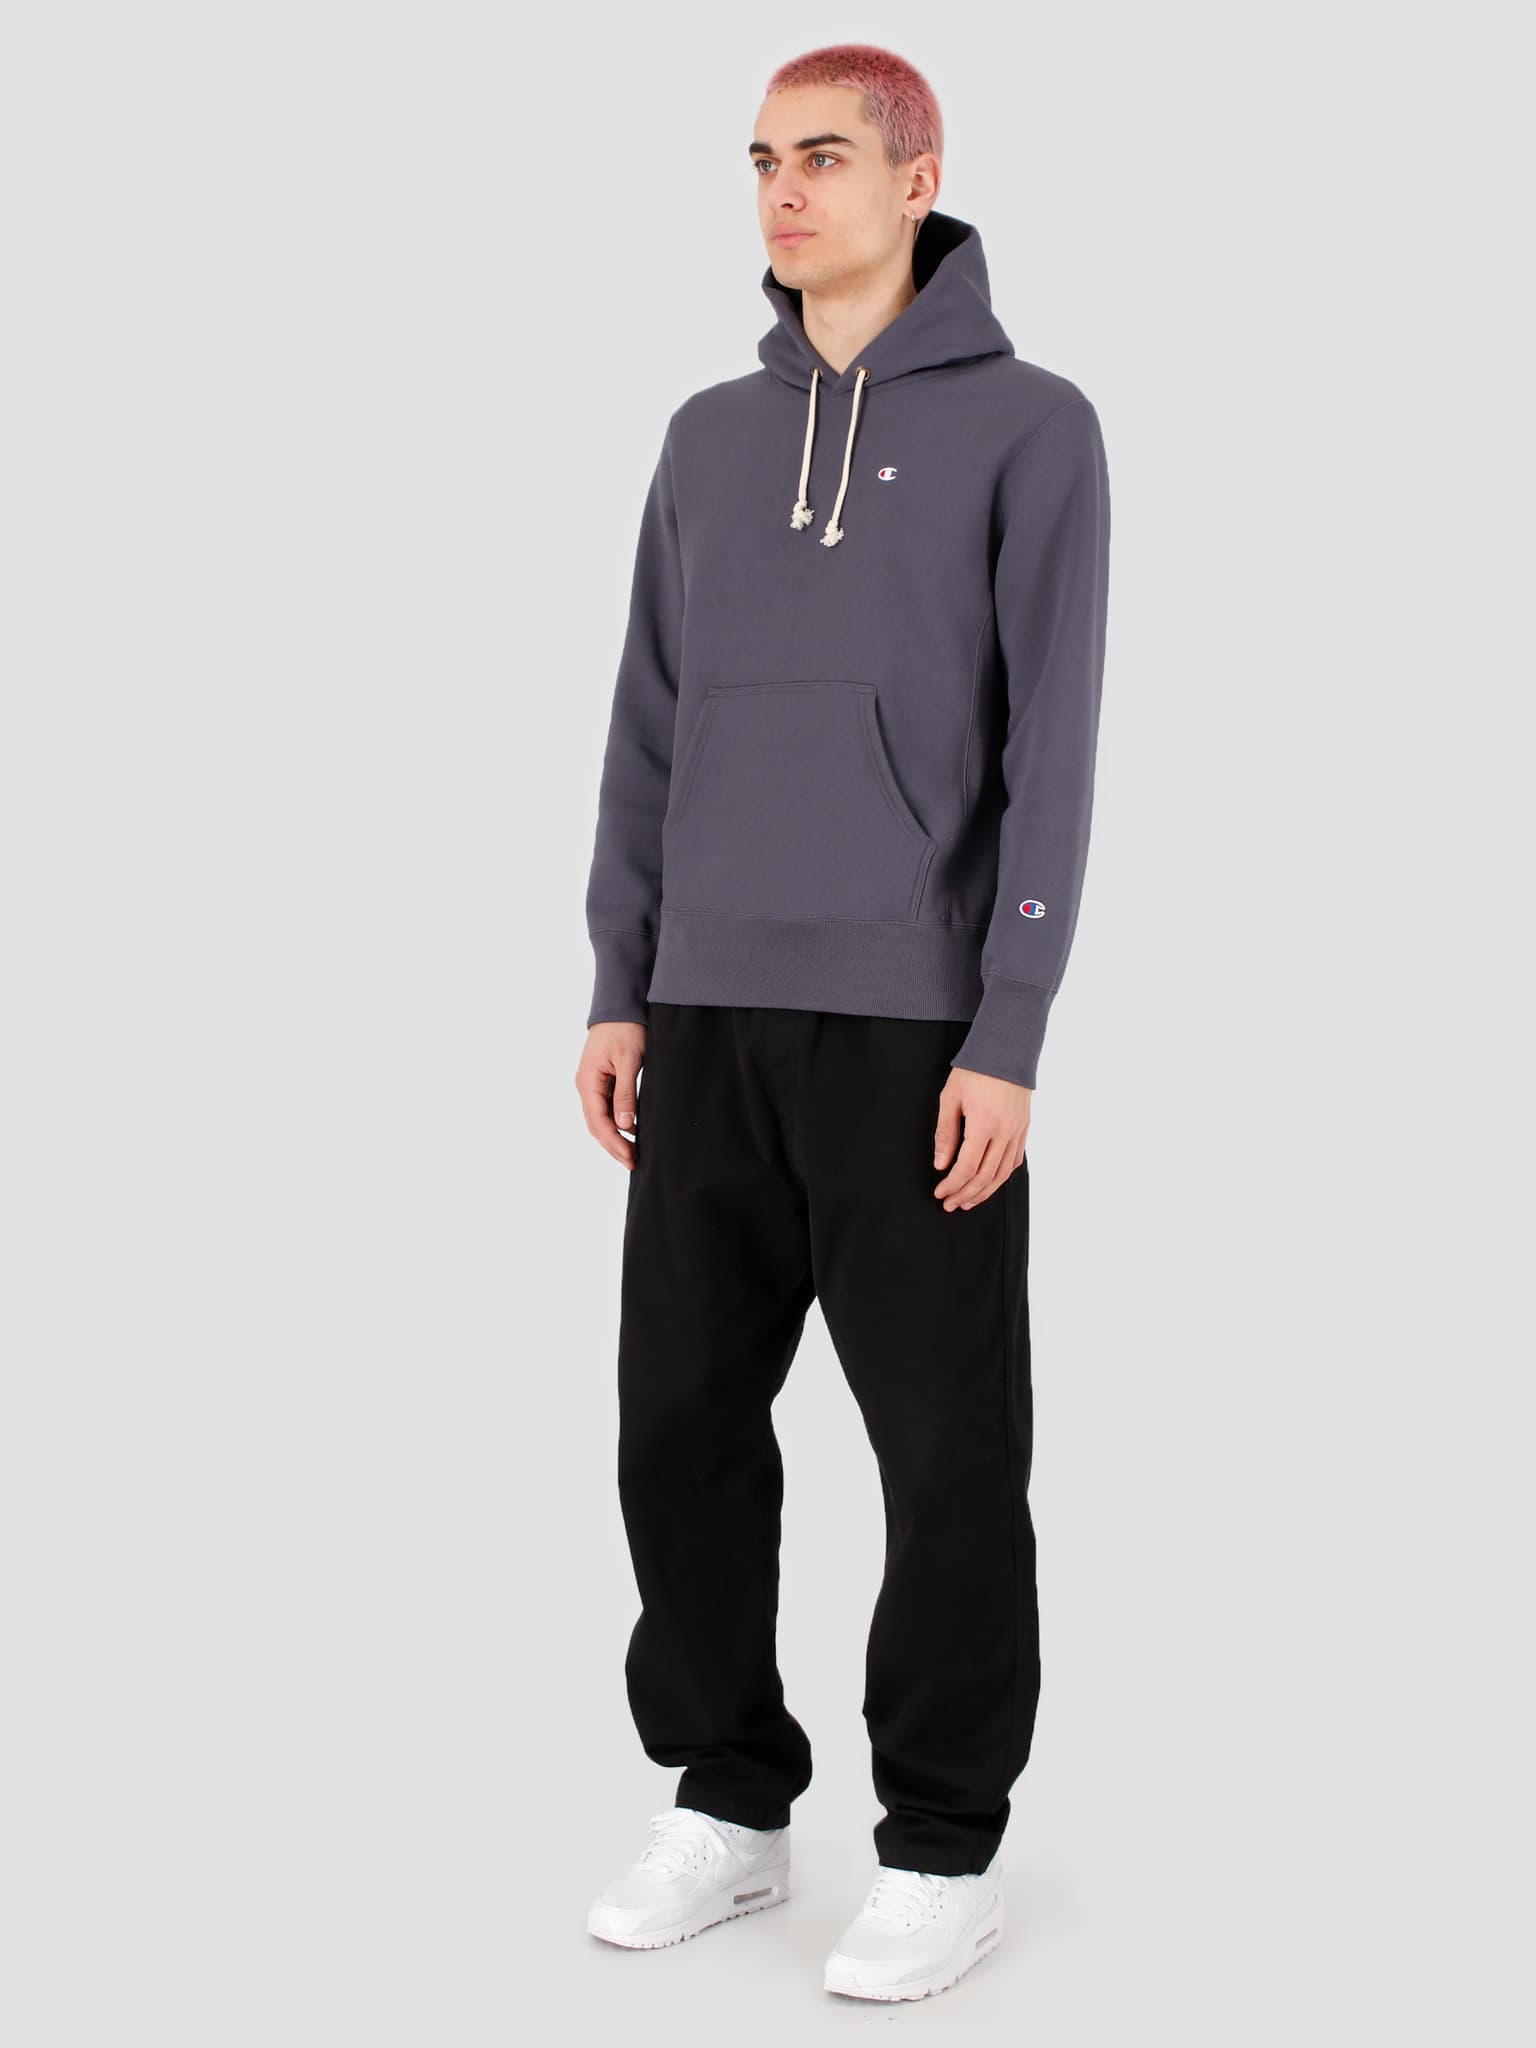 Hooded Sweatshirt Grey CHC 214675-BS514